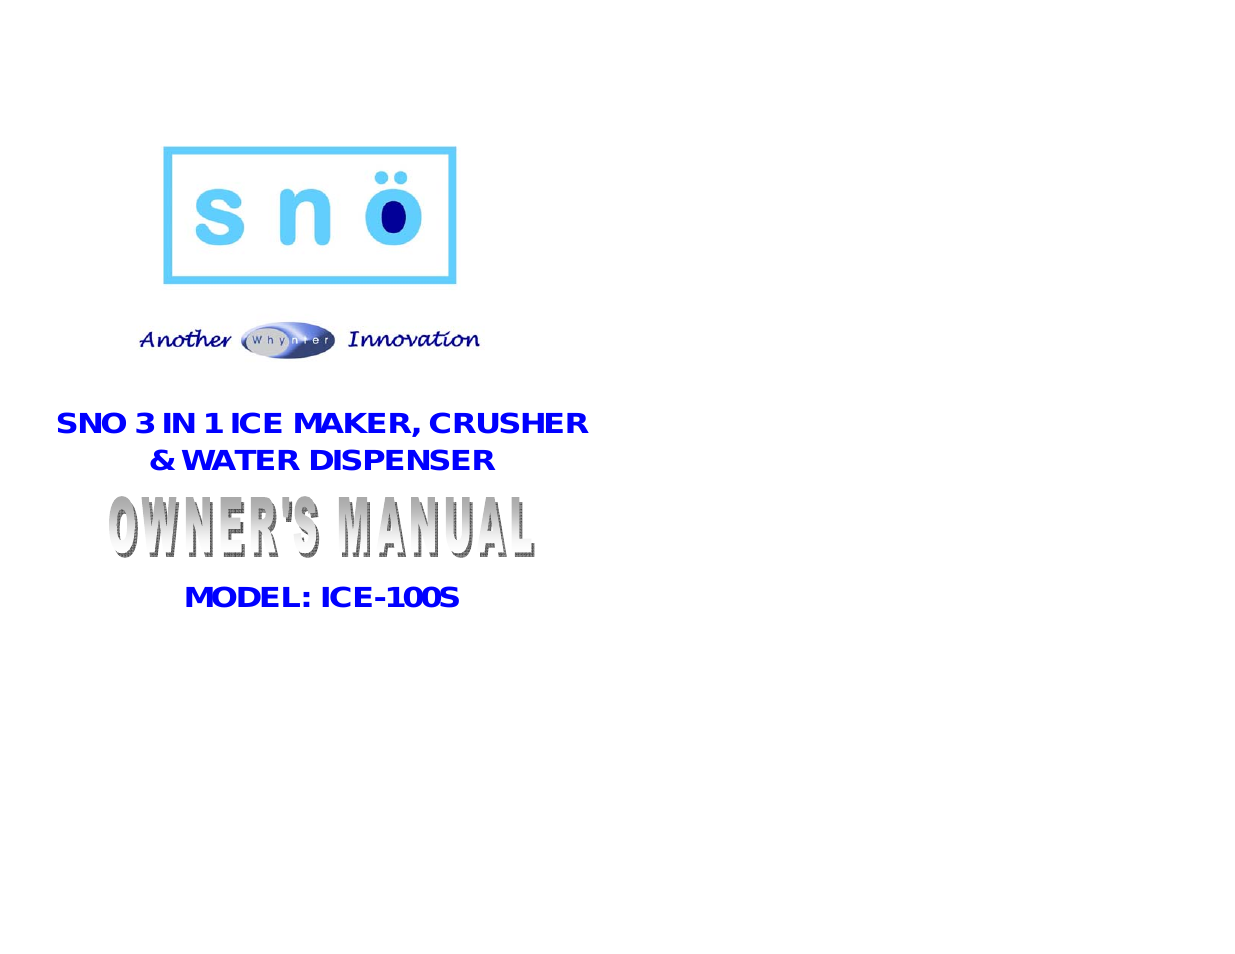 SNO ICE-100S